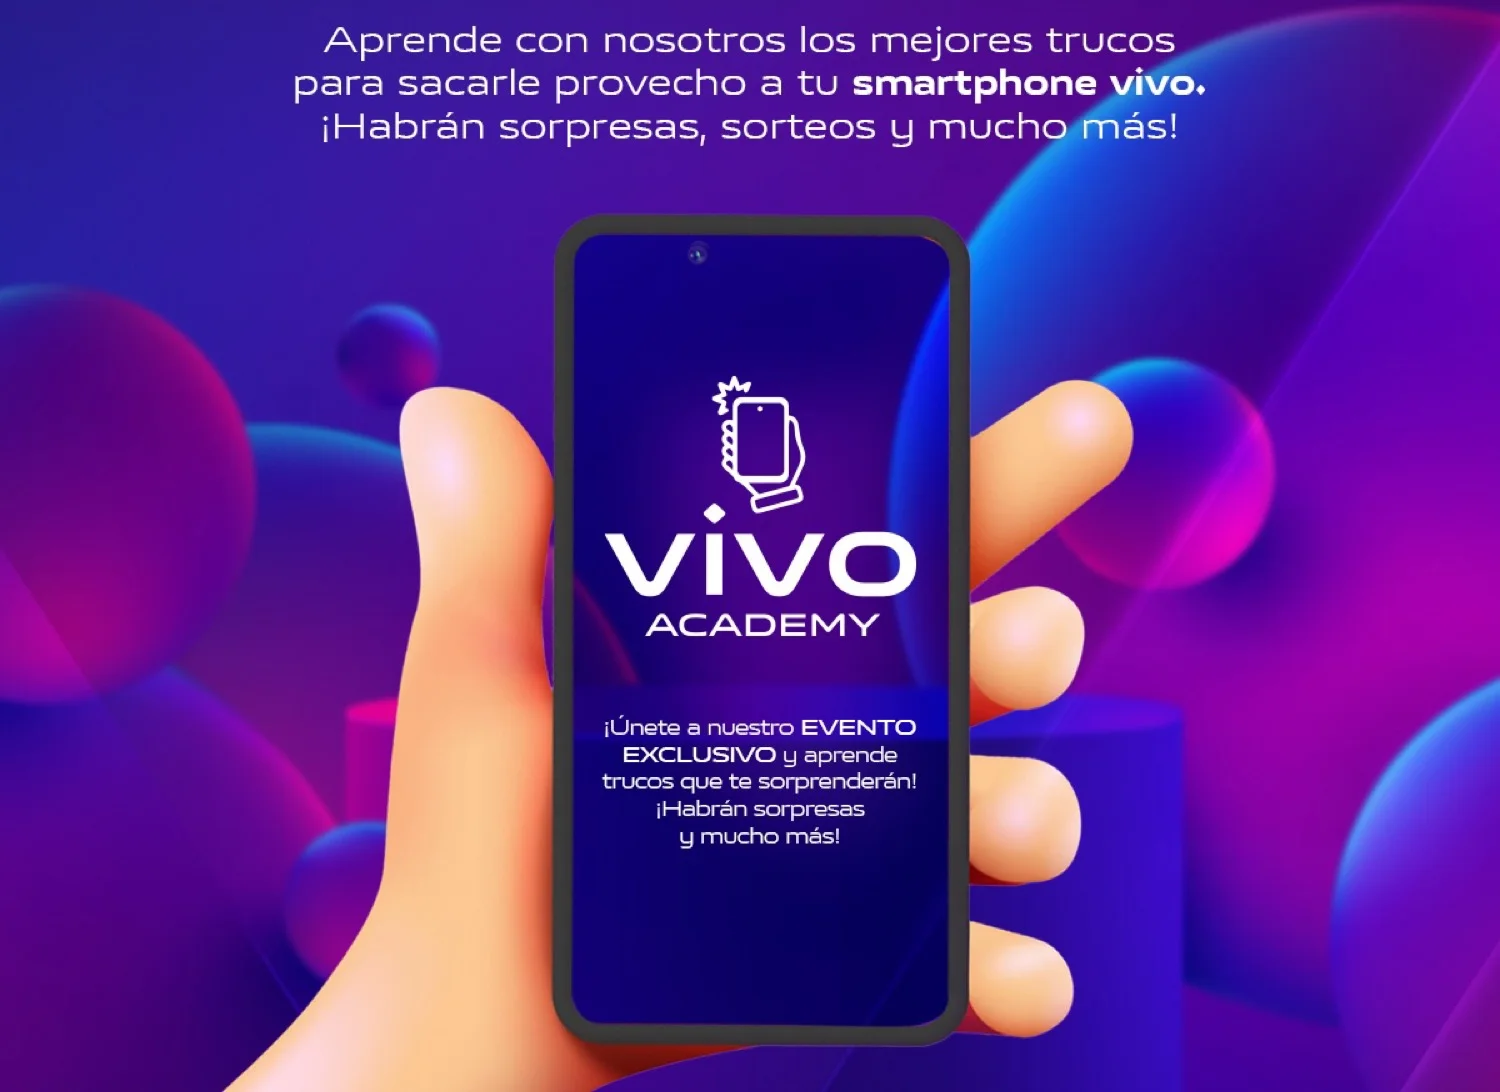 Vivo Academy: Taller gratuito para aprender más sobre tu smartphone